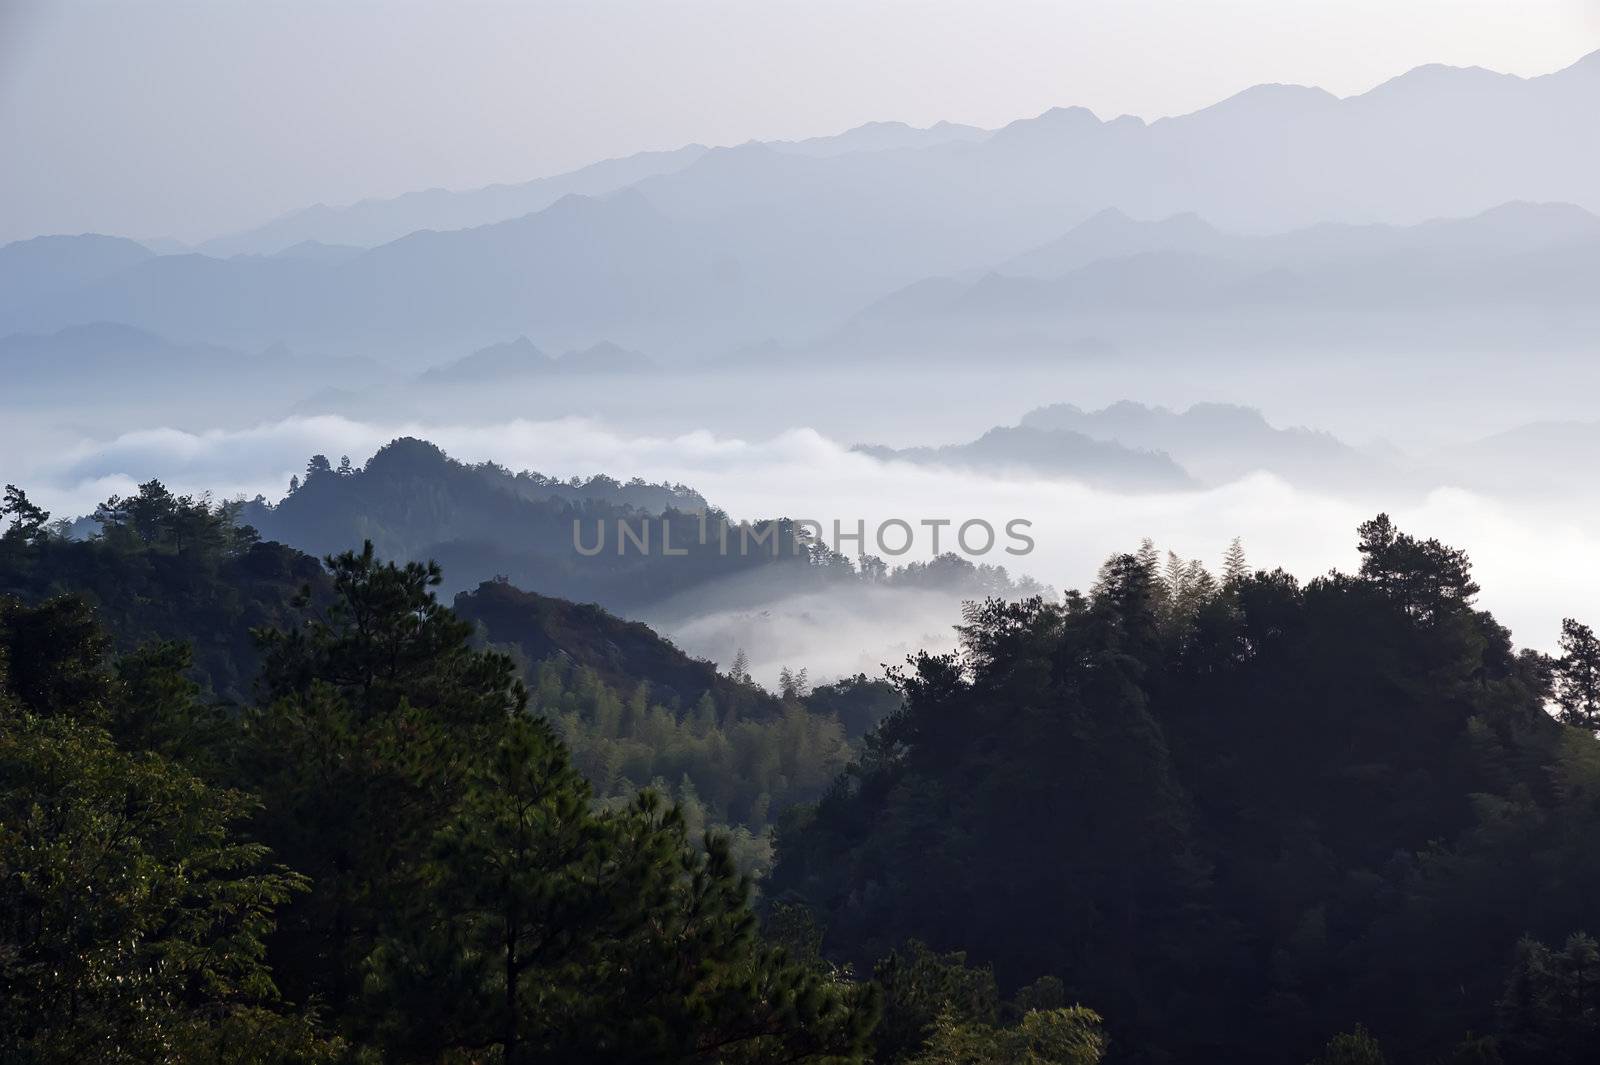 Beautiful scenery in Ziyuan County, Guangxi, China by xfdly5